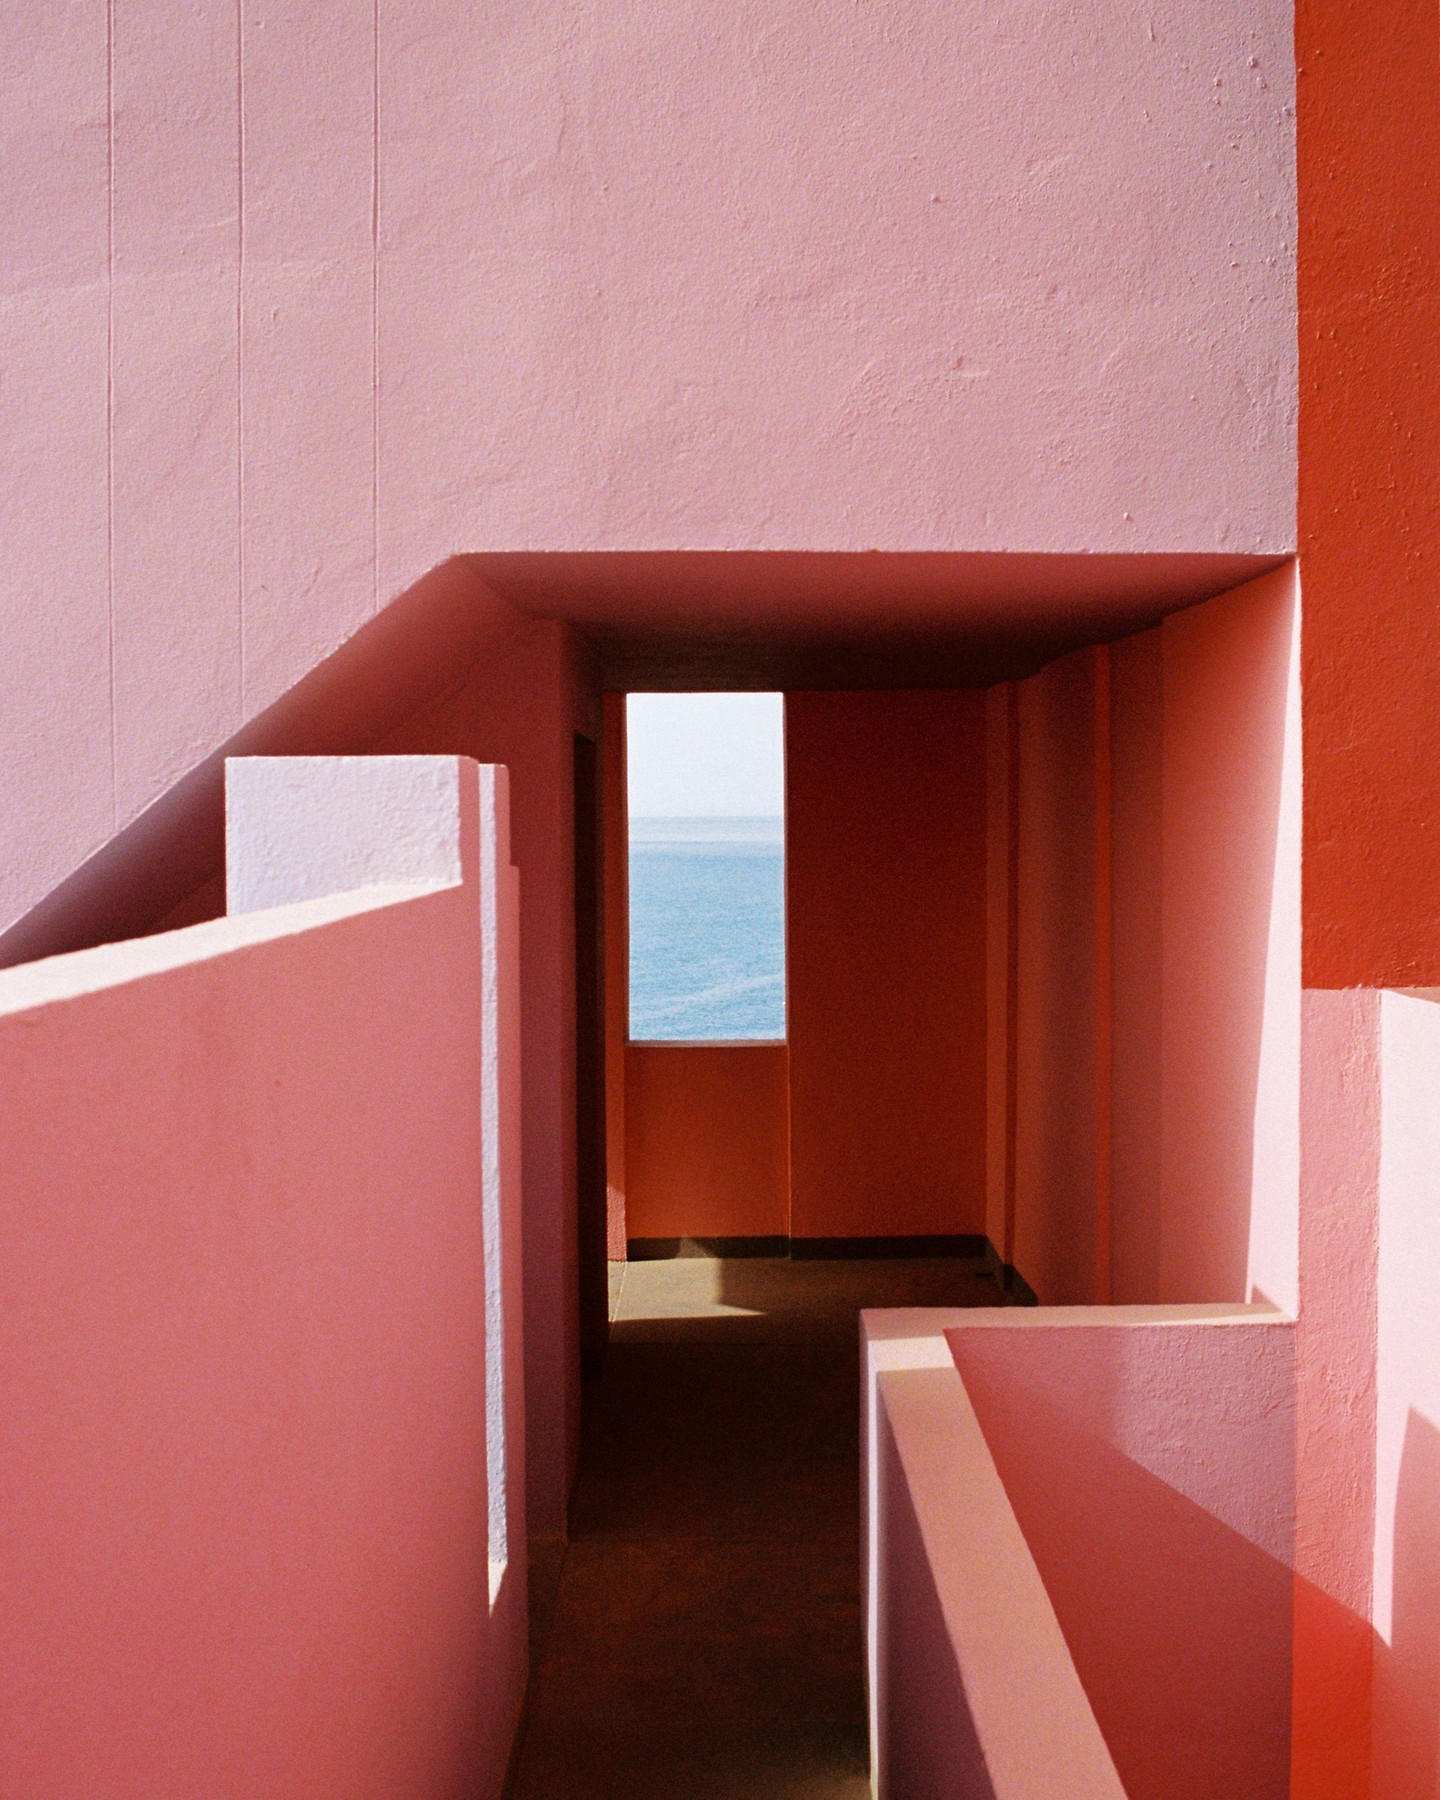 Airbnb - Ricardo Bofill’s La Muralla Roja is planned around sightlines to preserve certain views